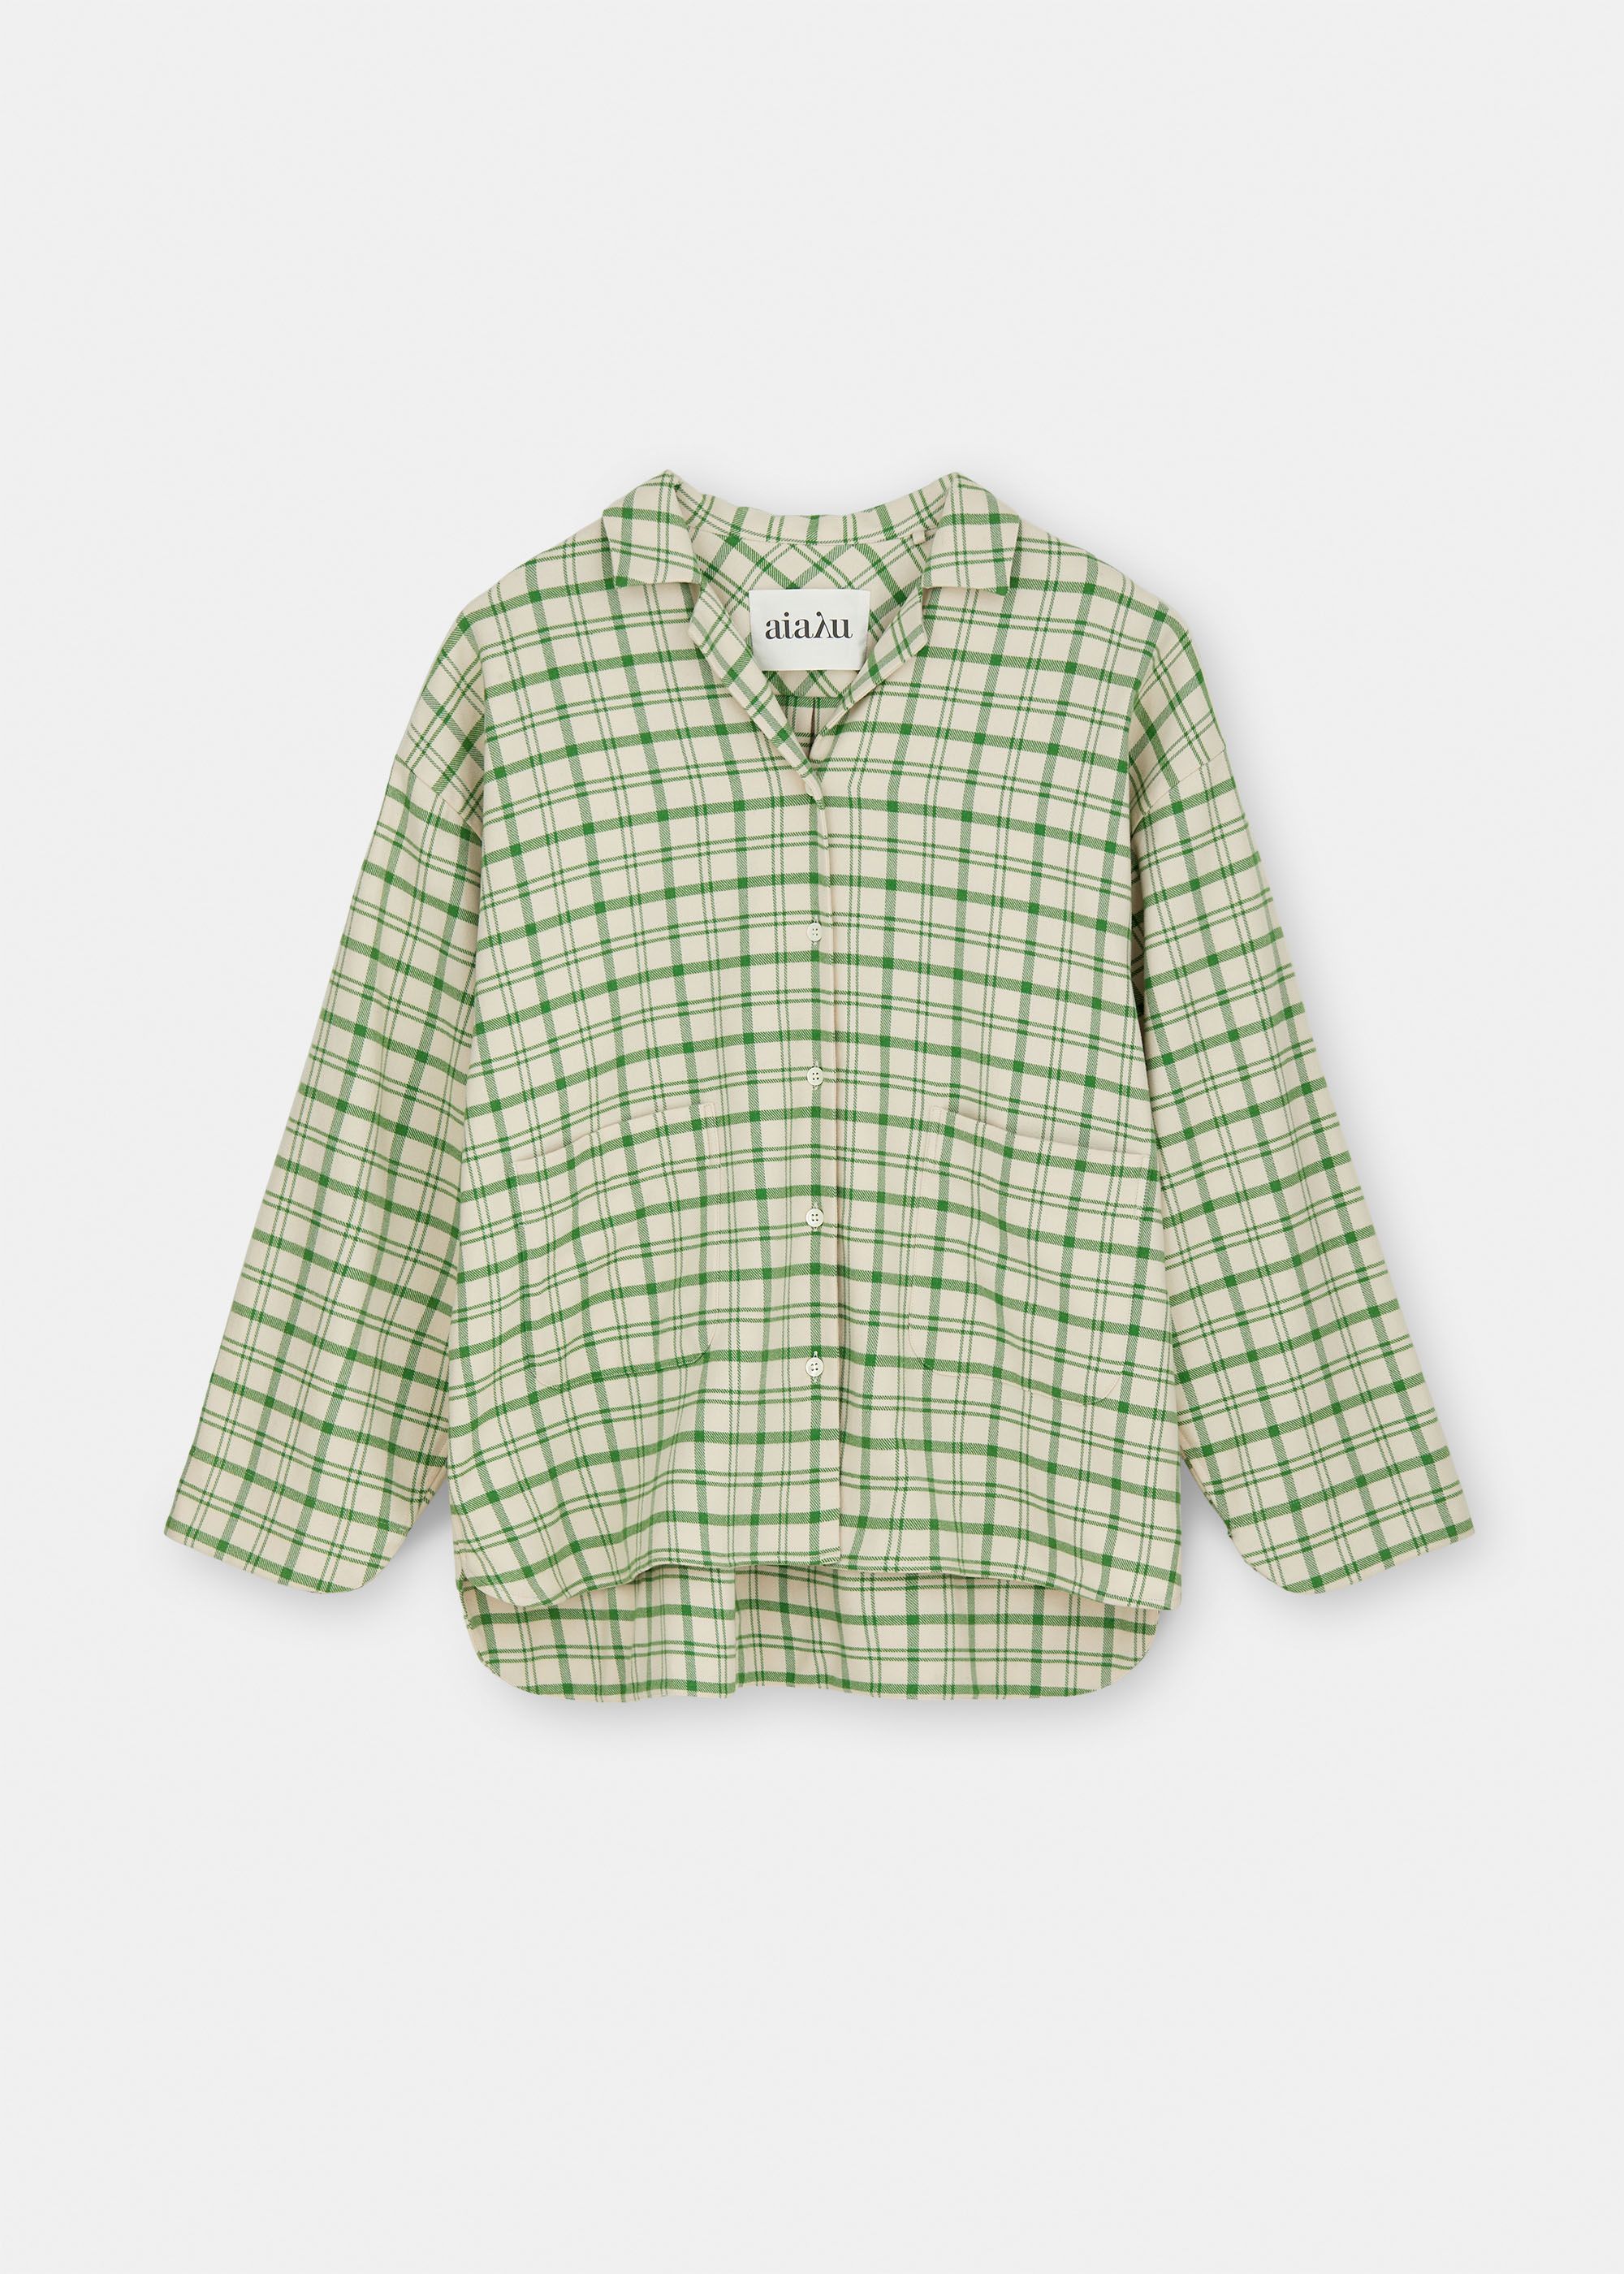 Pyjamas Shirt Check / Mix Hope